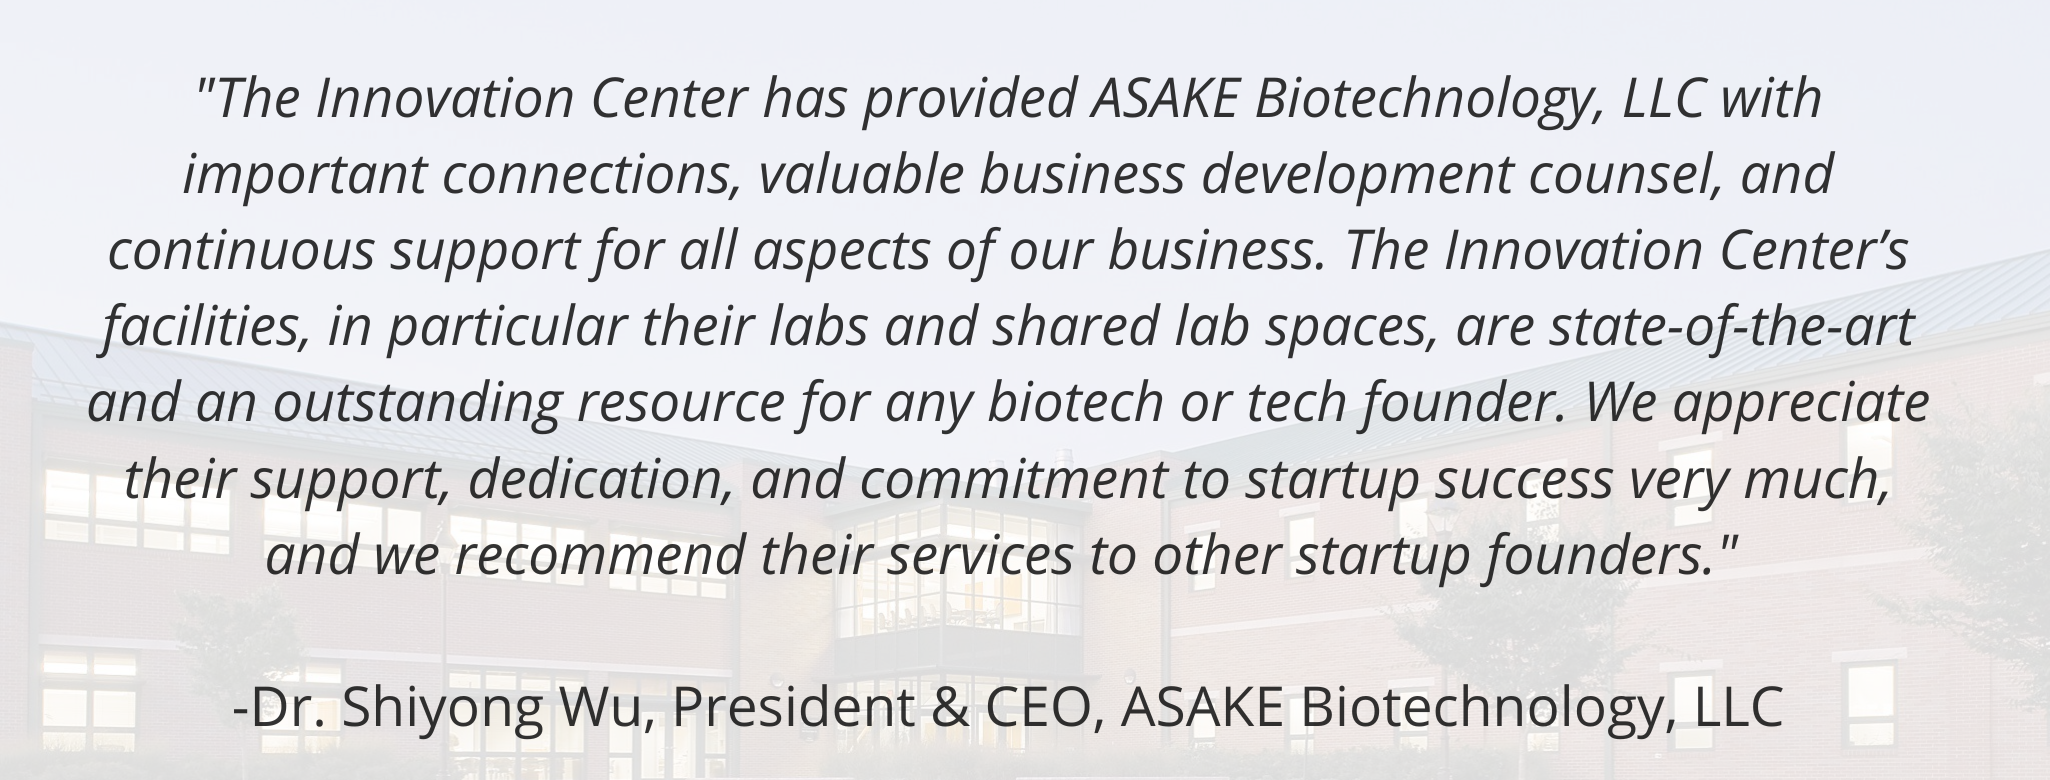 ASAKE Biotechnology Innovation Center Testimonial